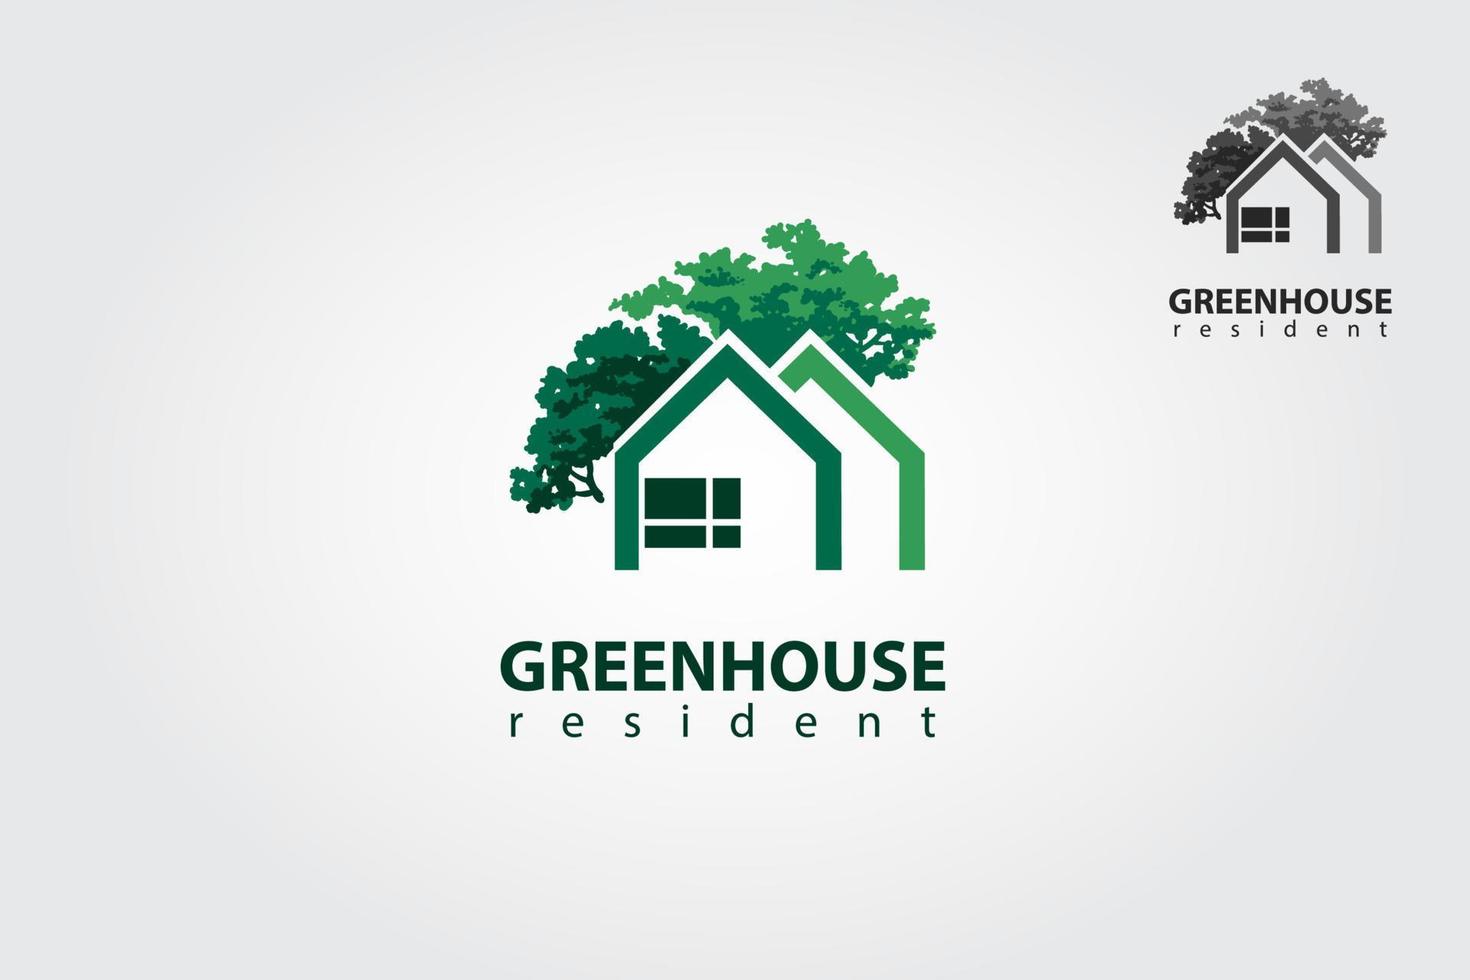 groen huis vector logo sjabloon. deze logo symboliseert een buurt, bescherming, vrede, groei, en zorg of bezorgdheid naar ontwikkeling, of sommige dingen dat dichtbij met natuur, ecologisch en omgeving.